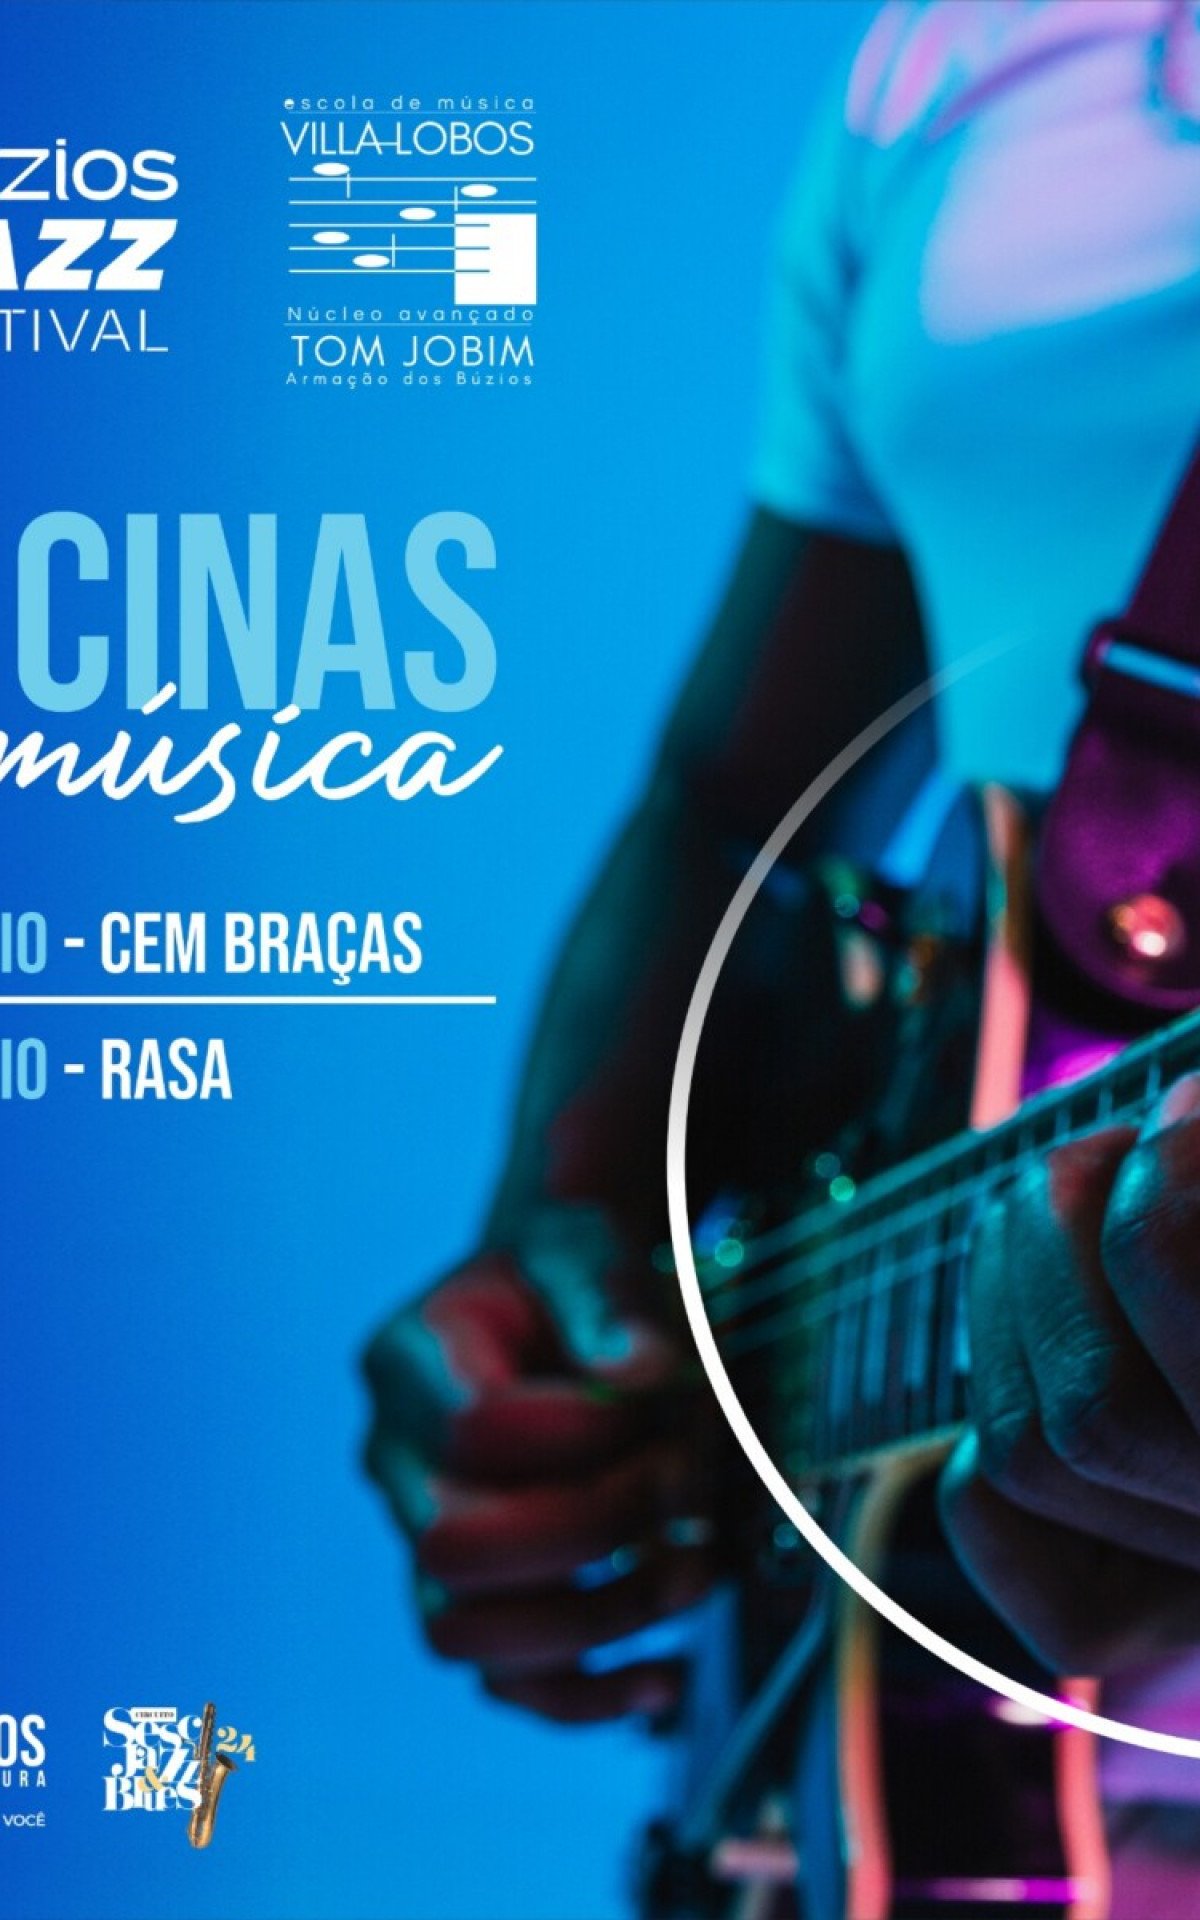 Búzios Jazz Festival promove oficinas de música e shows nas praças da Tia Uia e Jorjão | Búzios